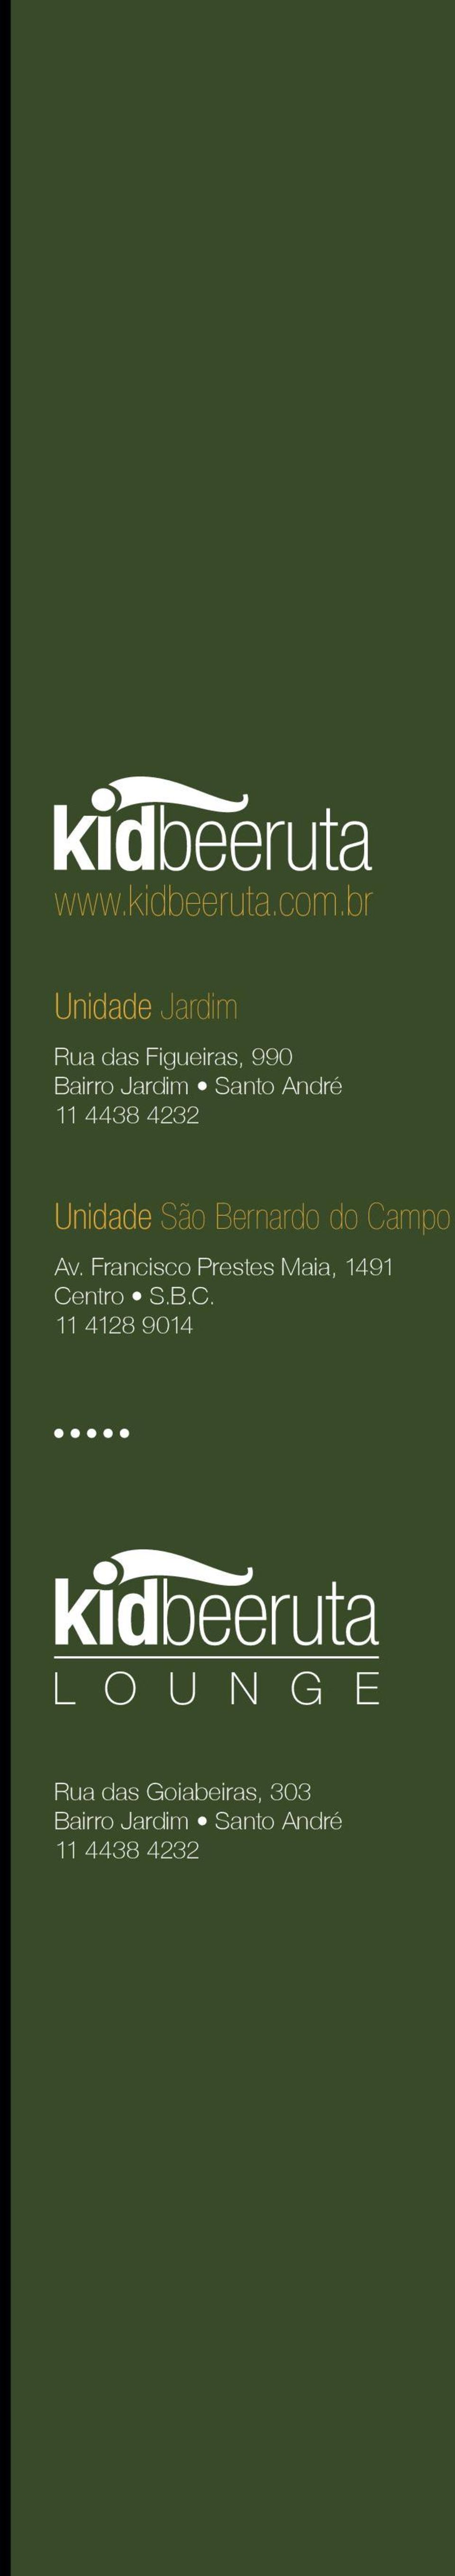 André 11 4438 4232 Unidade São Bernardo do Campo Av.